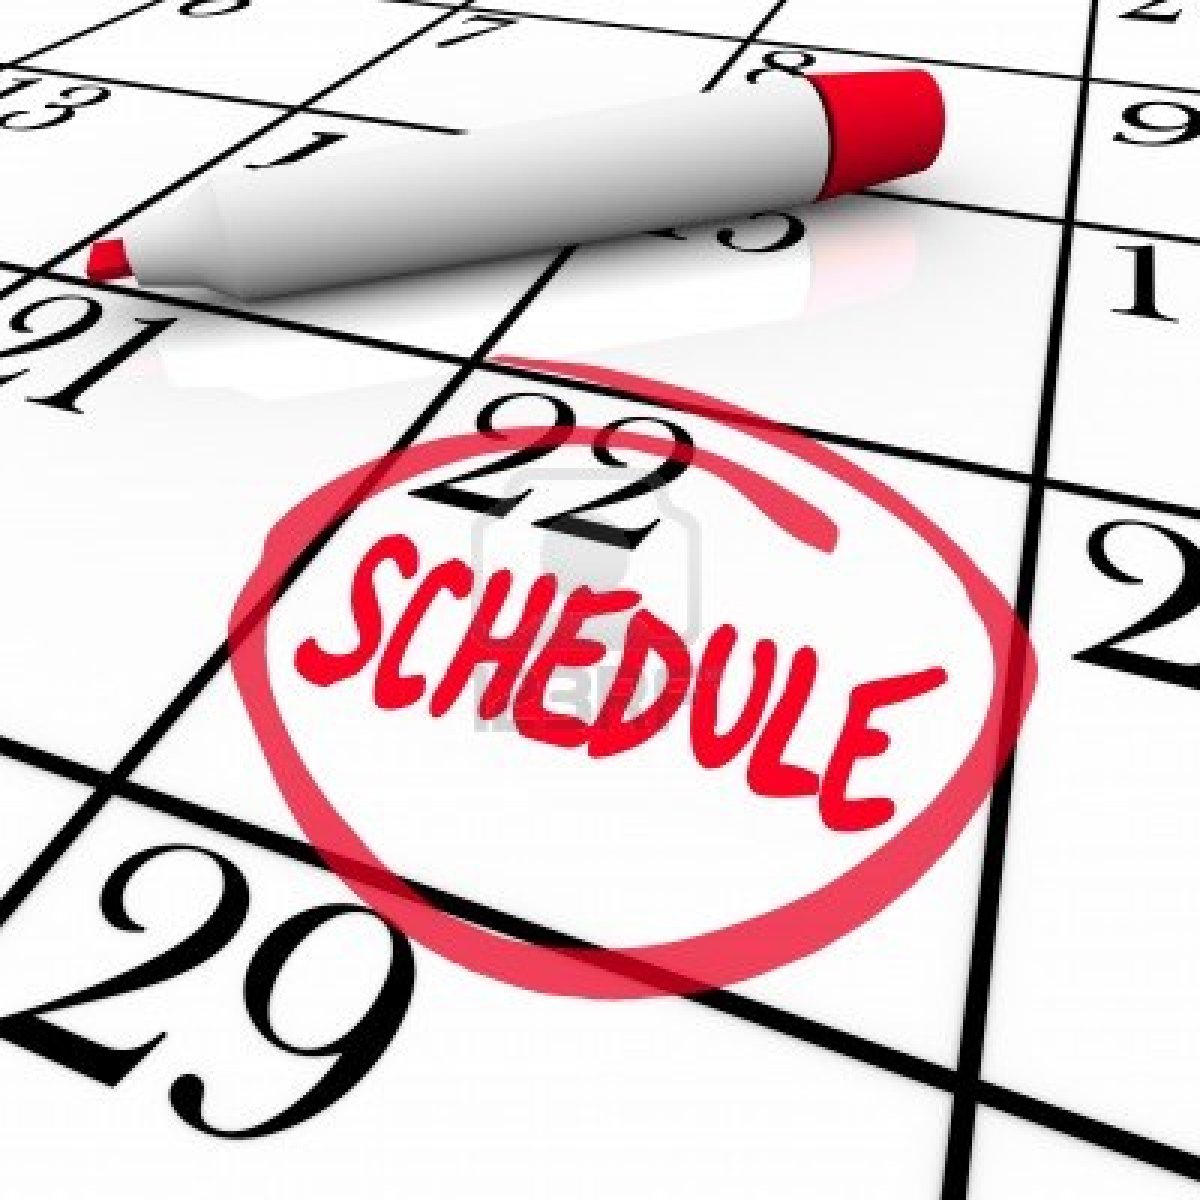 Make a schedule